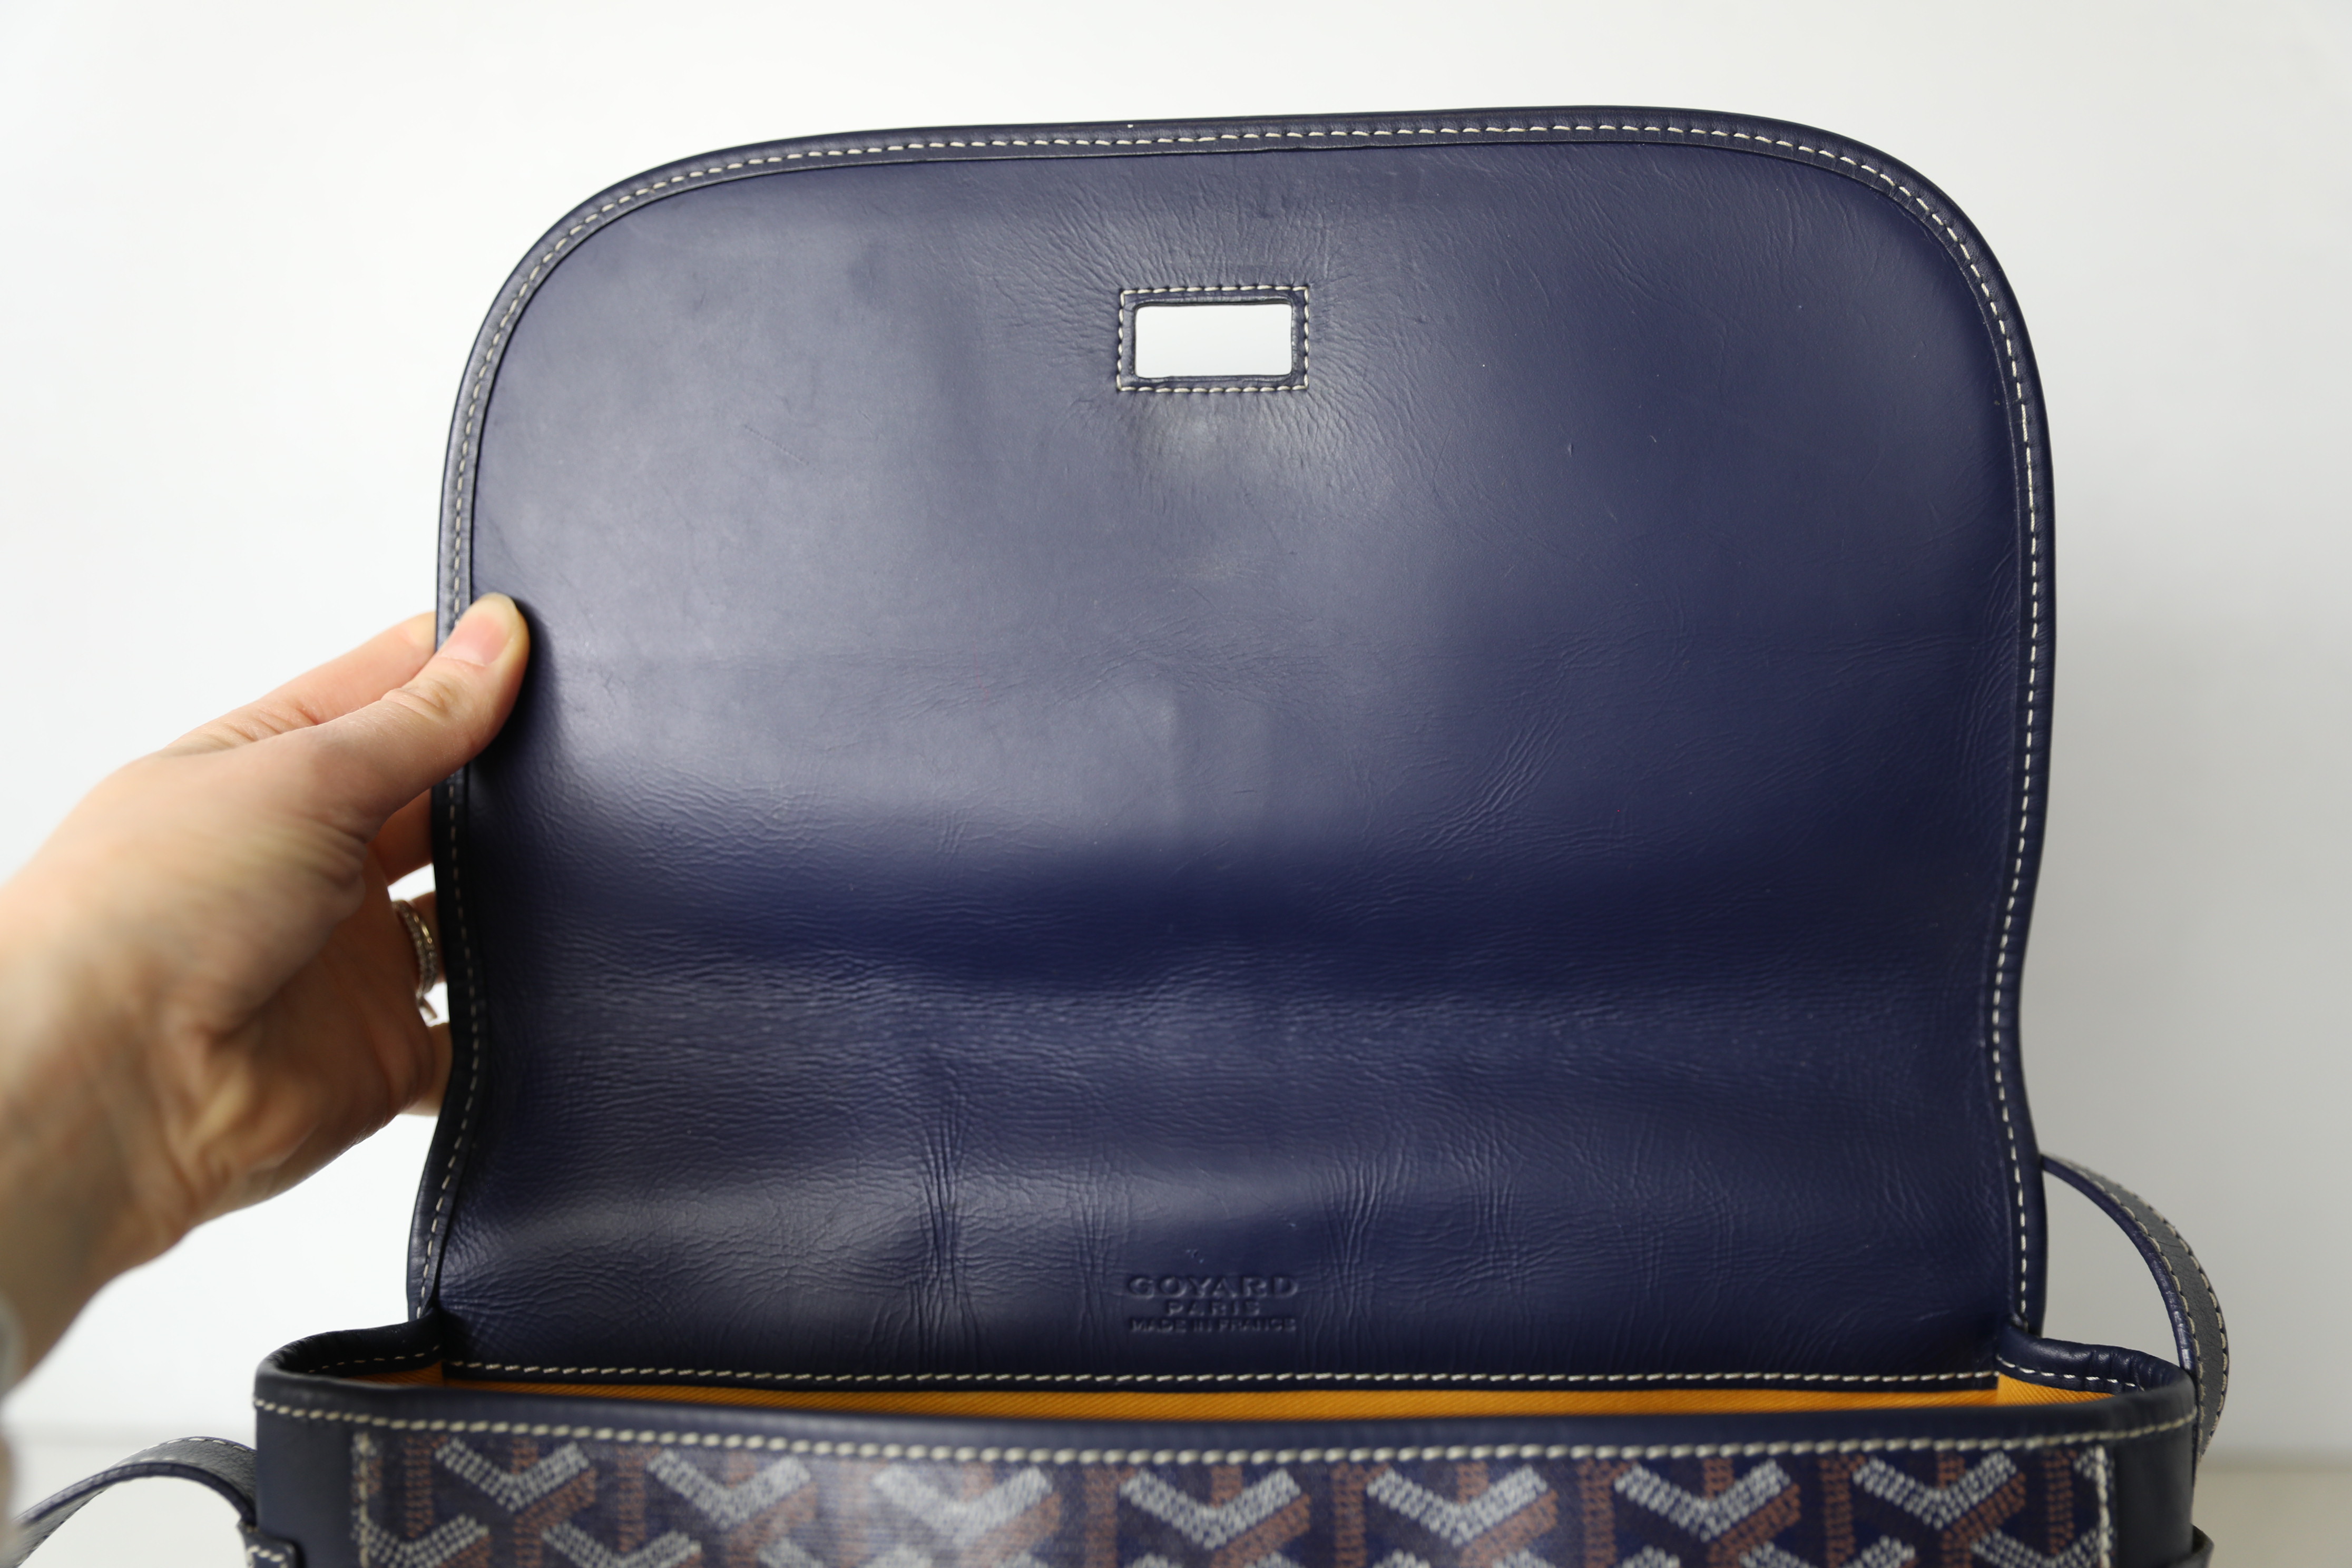 Goyard Belvedere Royal Blue Messenger Bag